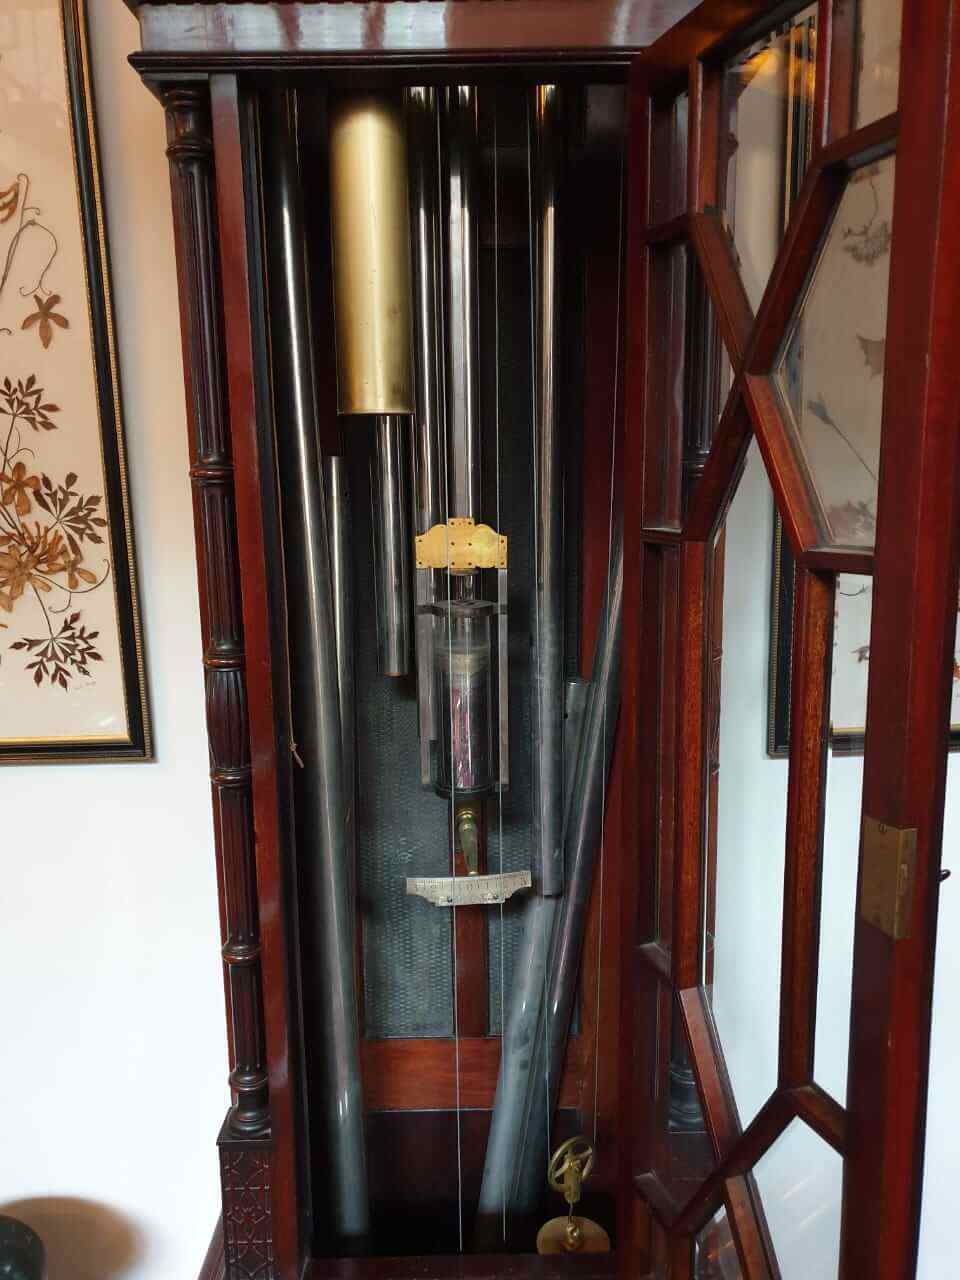 A mahogany tubular chiming longcase clock, Smith & Son Ltd, London, late 19th/early 20th century